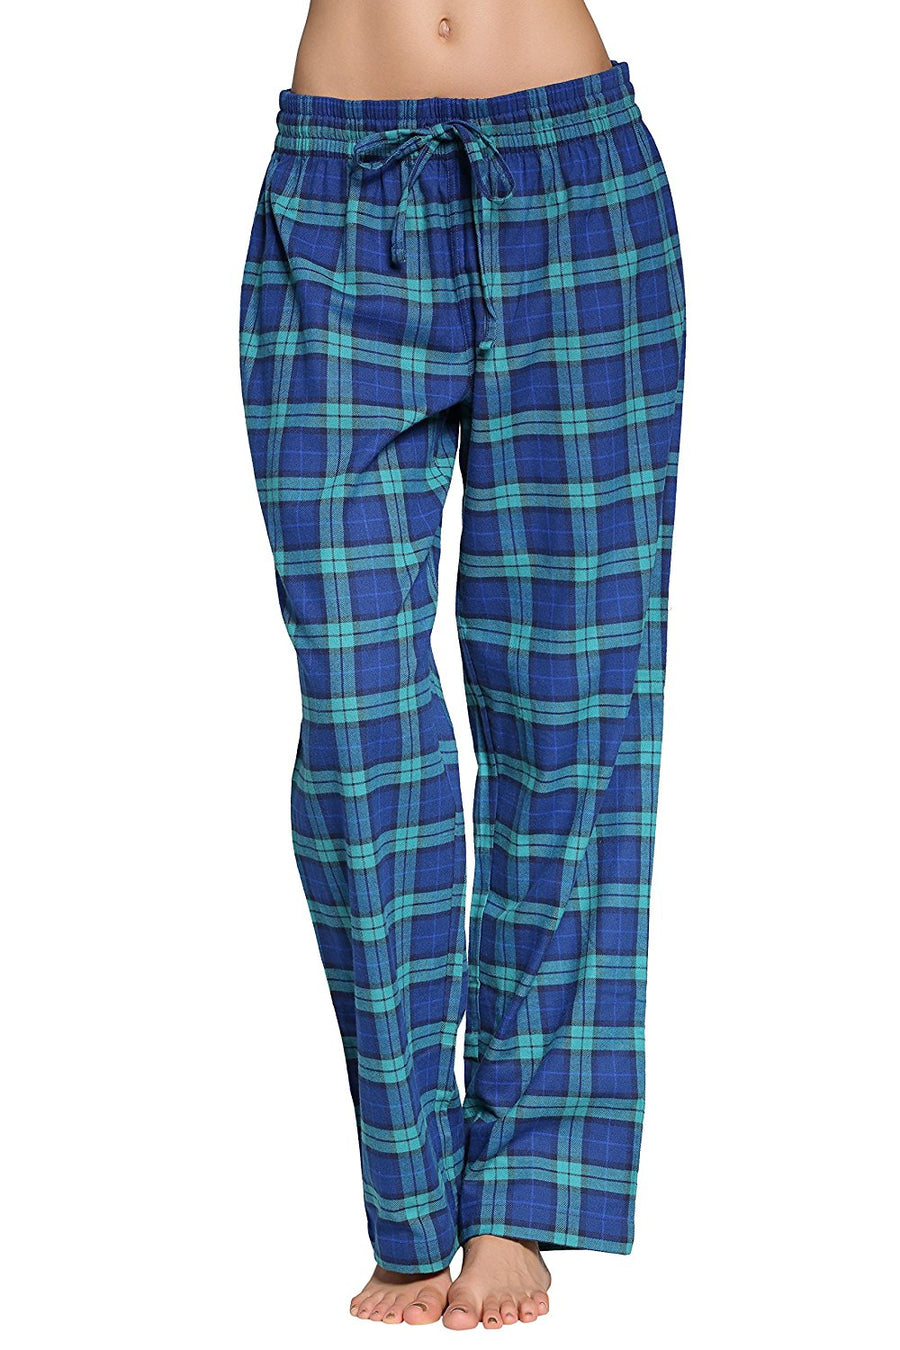 CYZ Women's 100% Cotton Super Soft Flannel Plaid Pajama/Louge